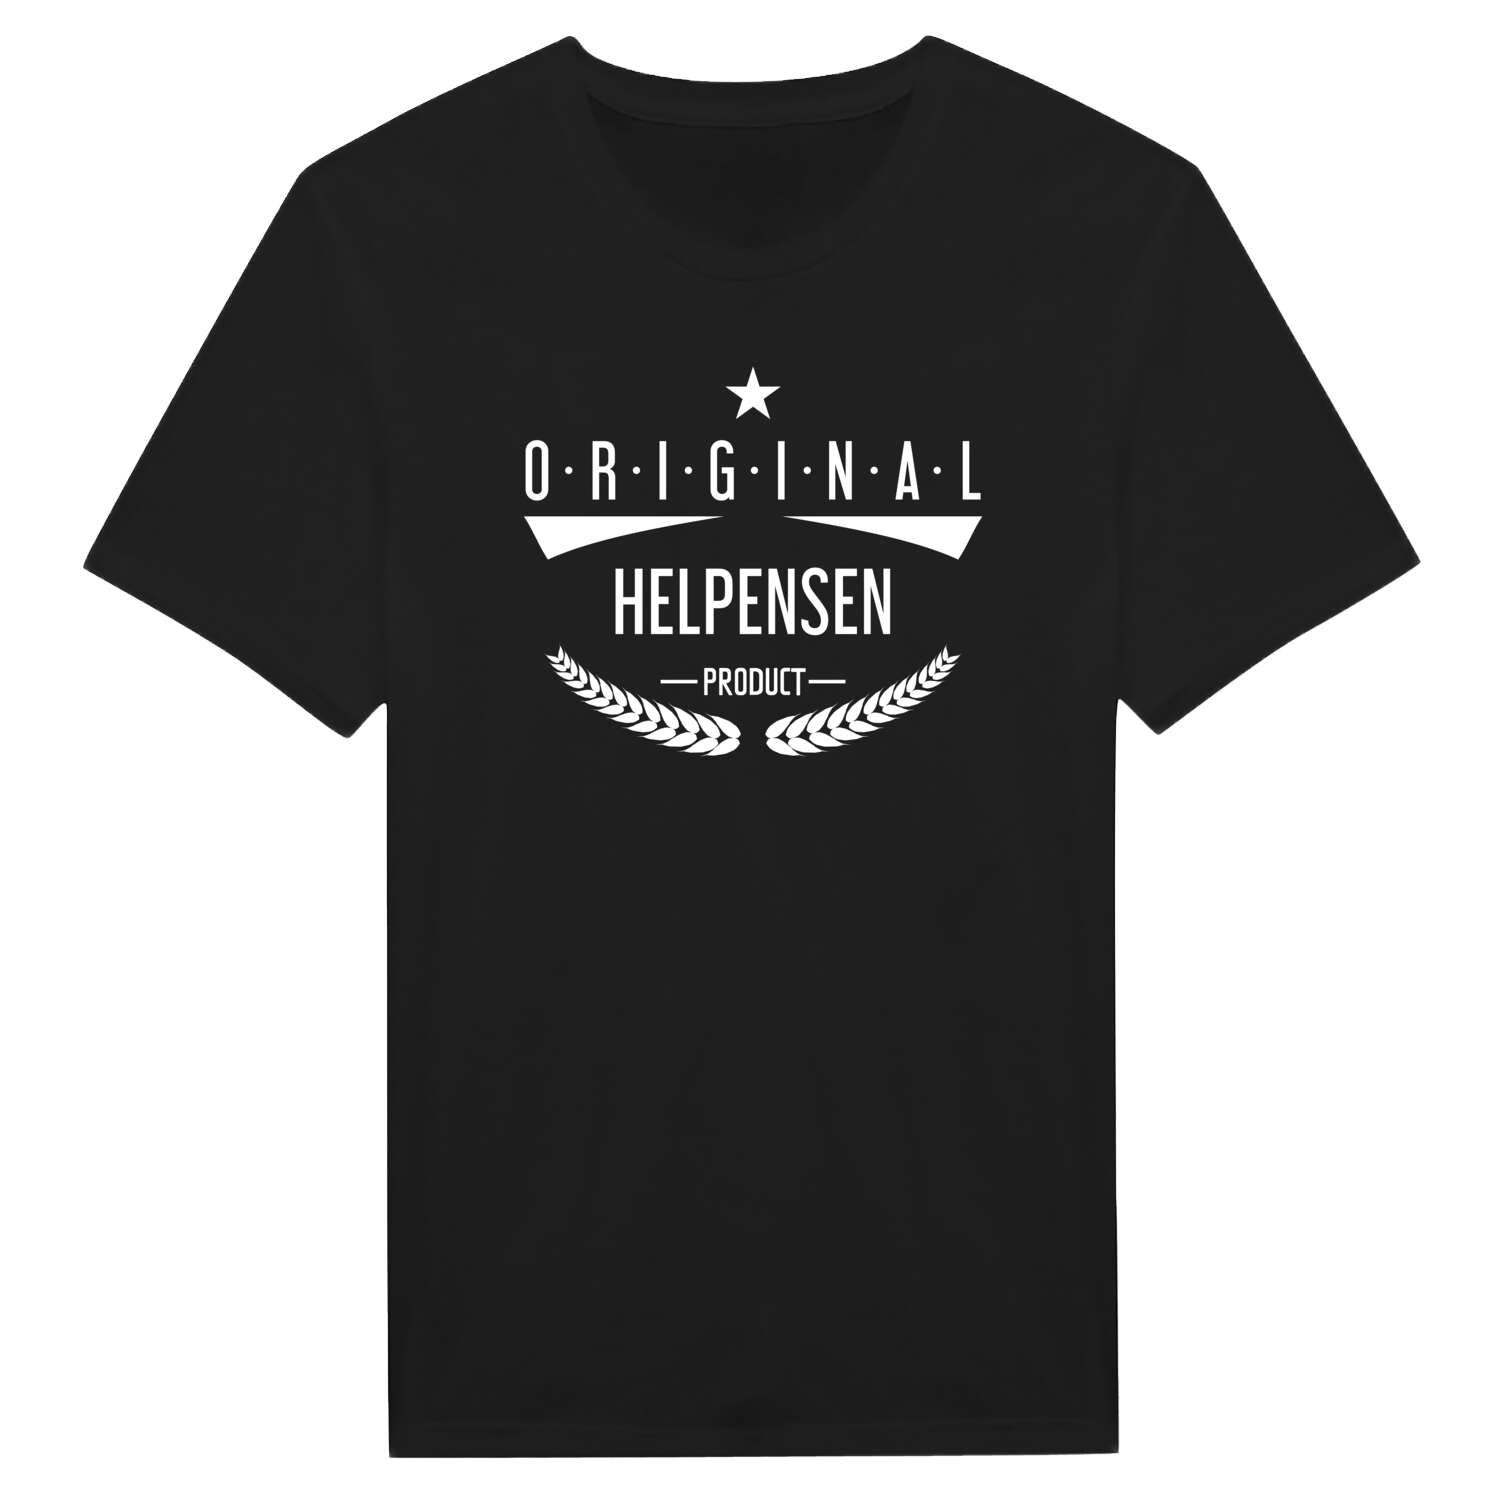 Helpensen T-Shirt »Original Product«